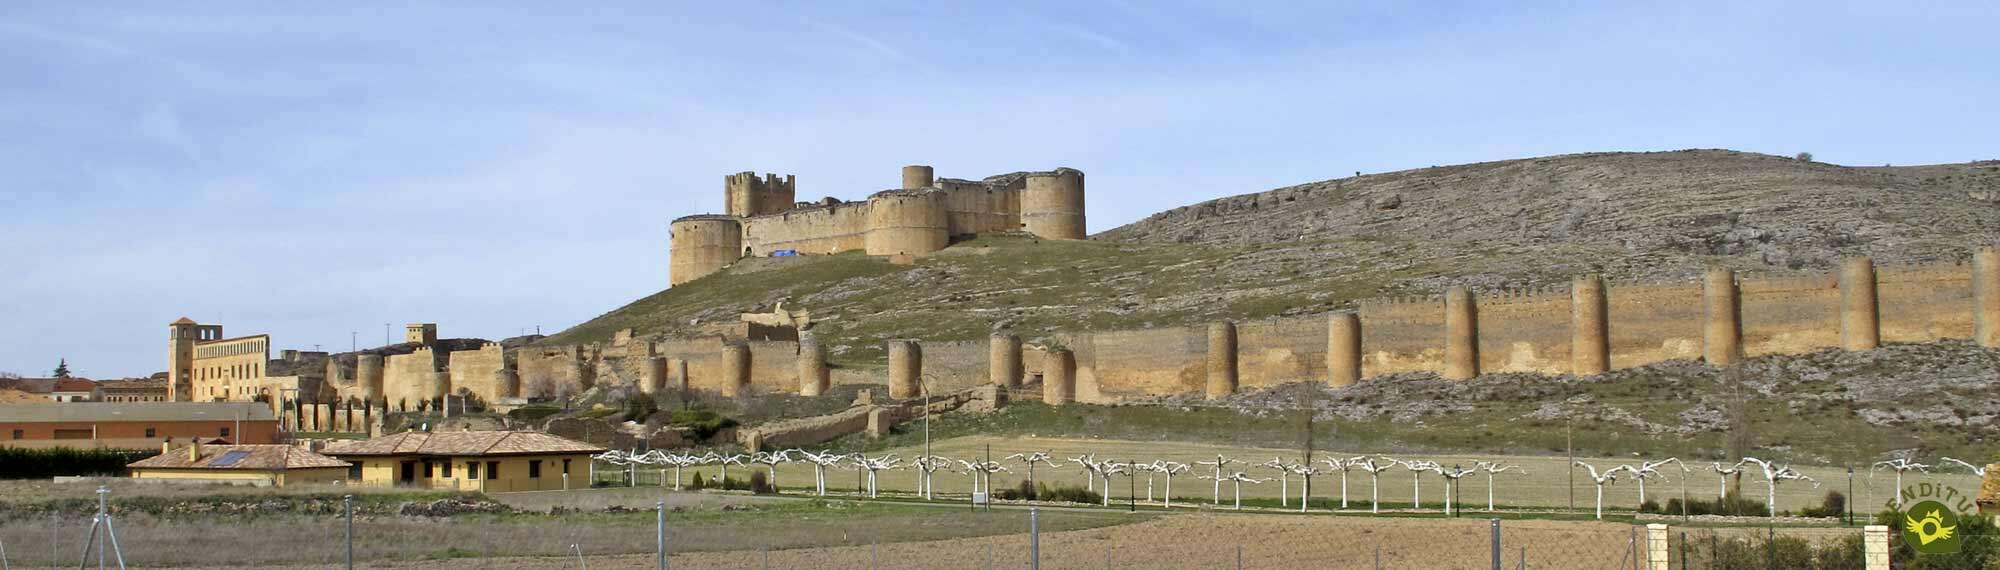 Ruta de los castillos y fortalezas de Soria